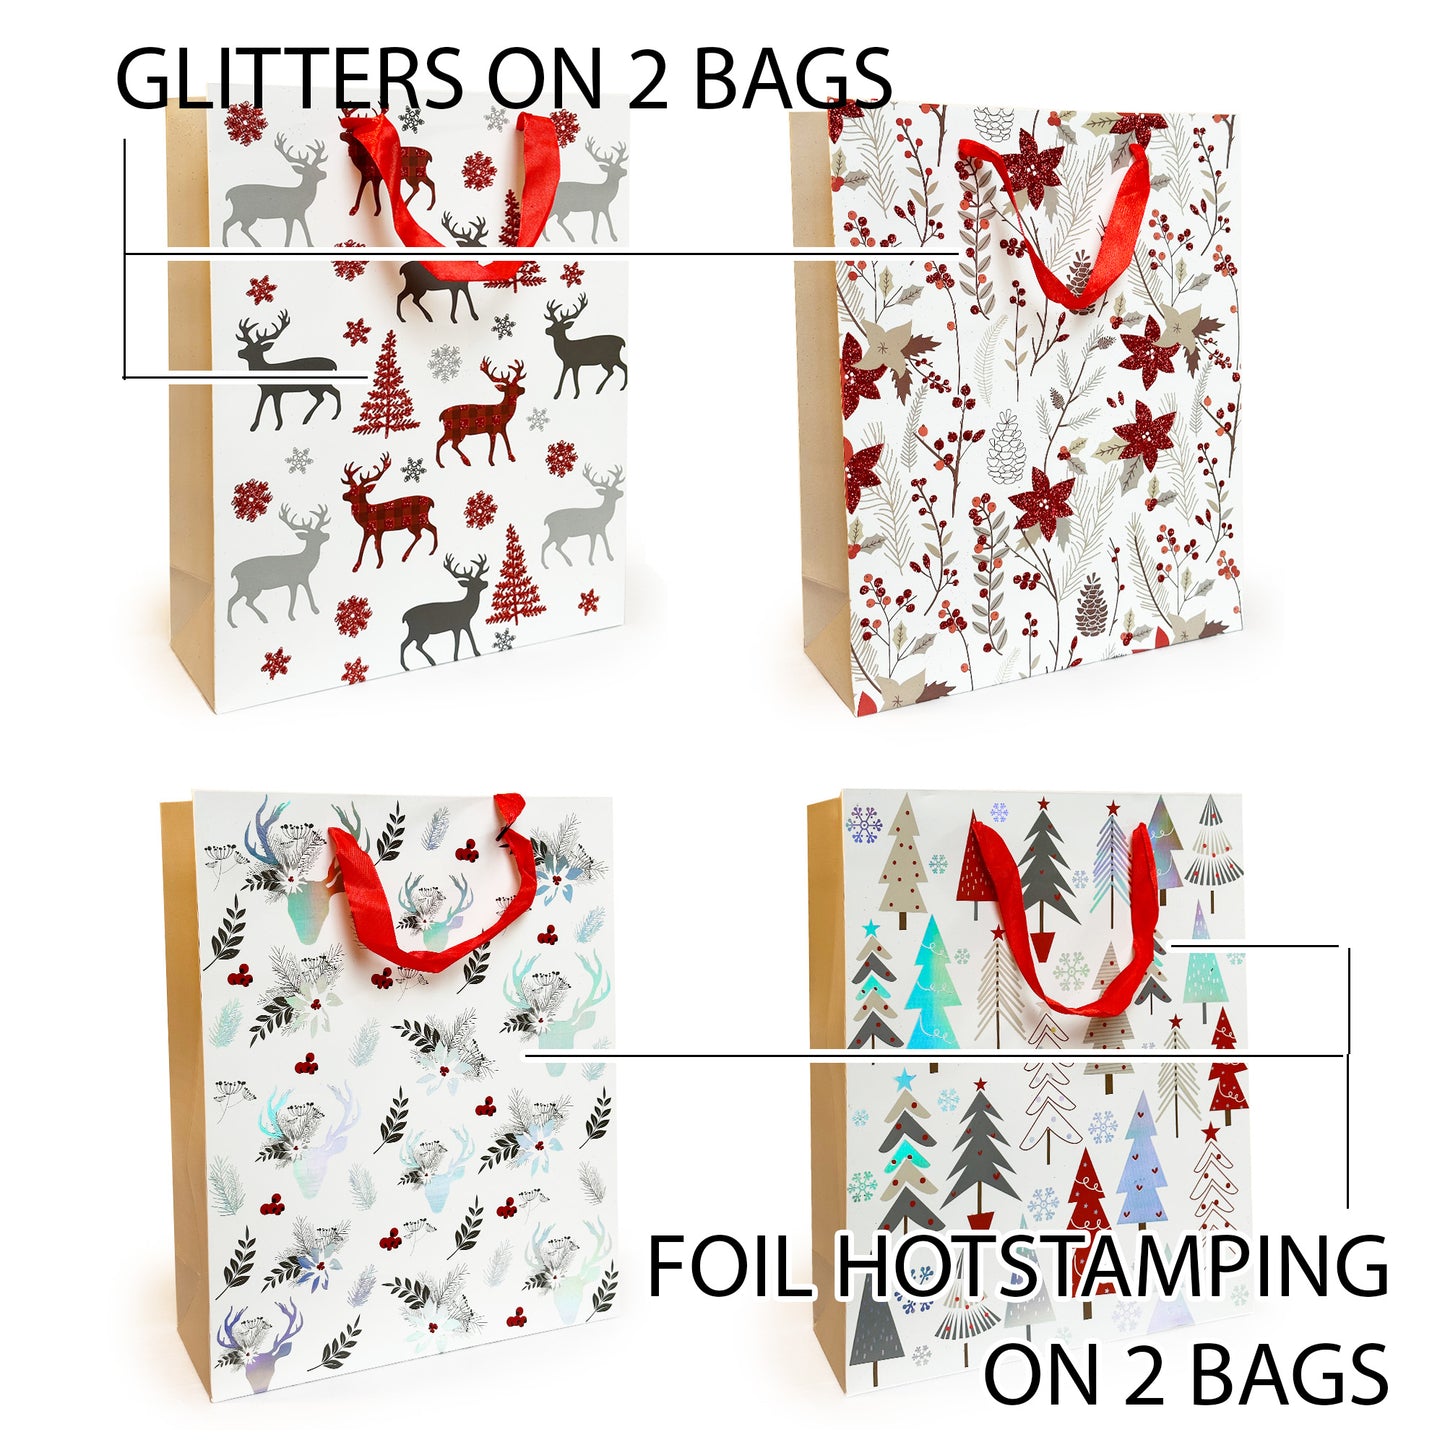 Allgala Gift Bags Christmas 12-PC Premium Metallic Foil Hotstamping or Glitter Chritmas Gift Bag